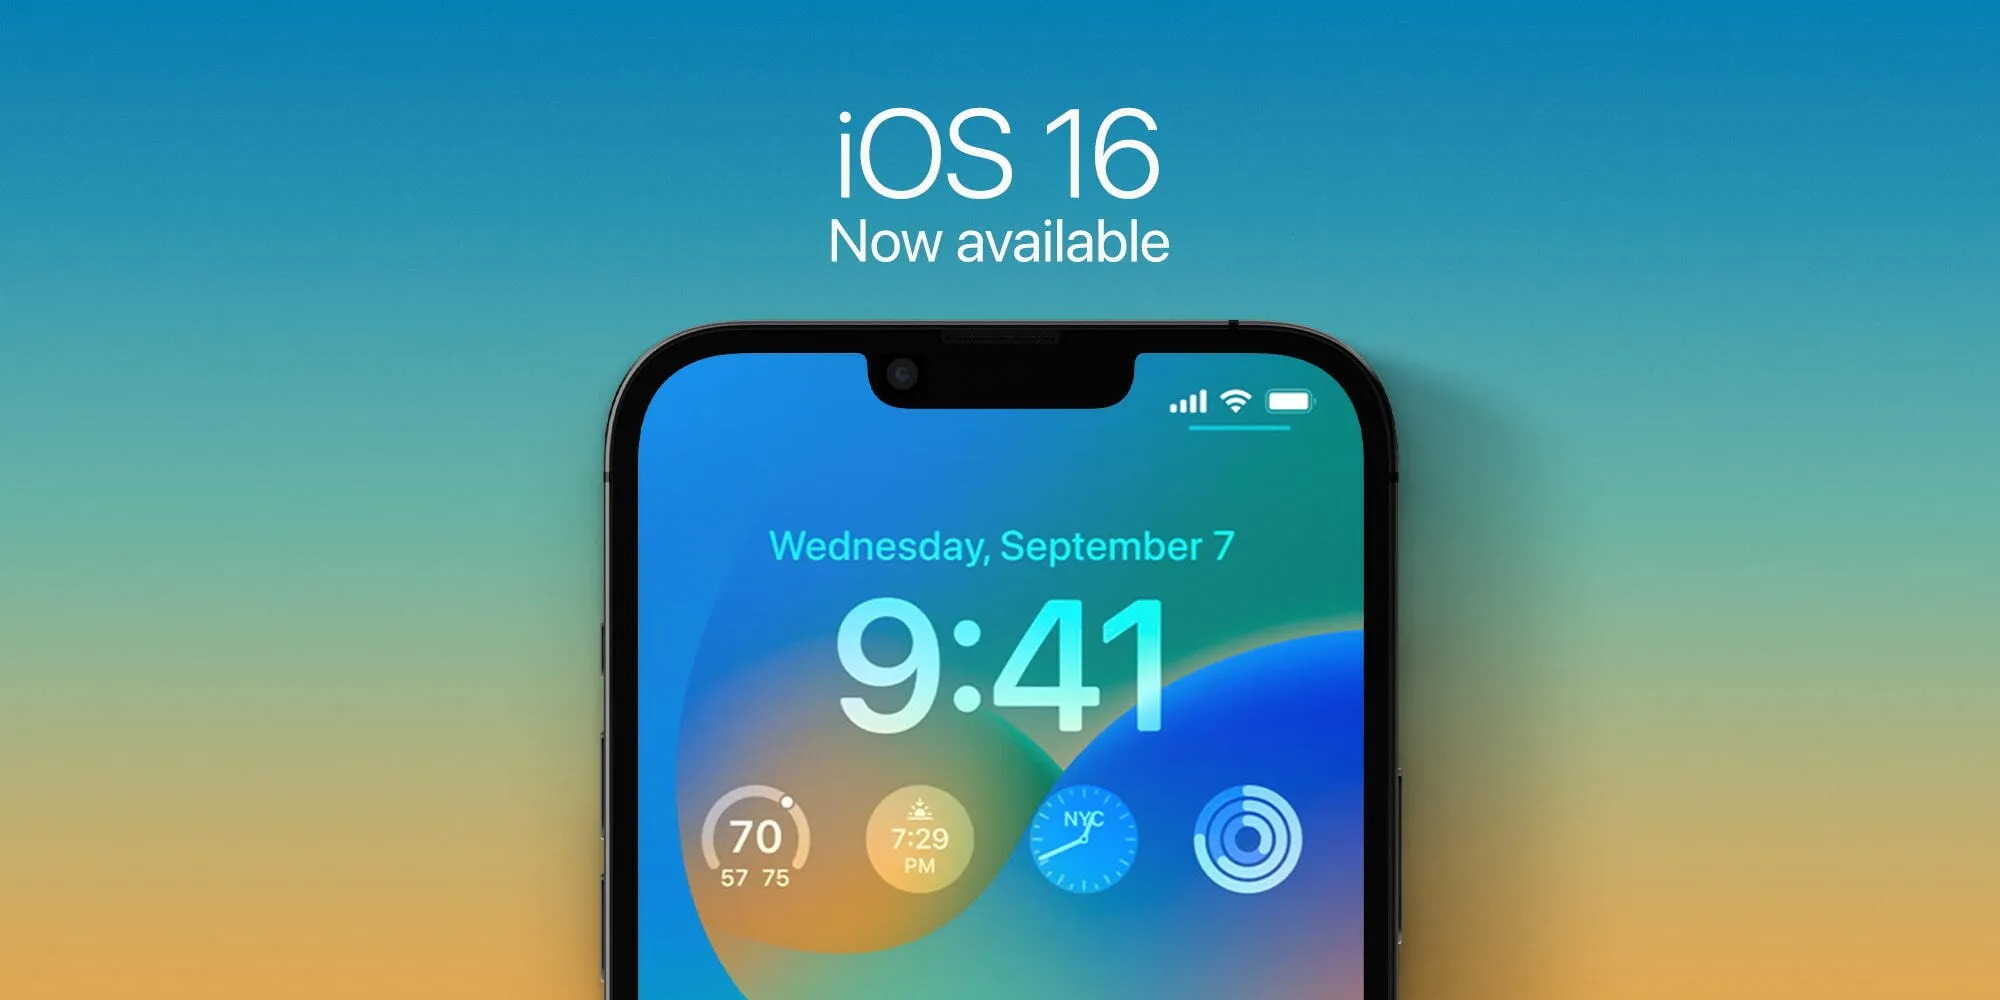 cập nhật iOS 16: Đừng bỏ lỡ bất kỳ tính năng mới nào của iOS